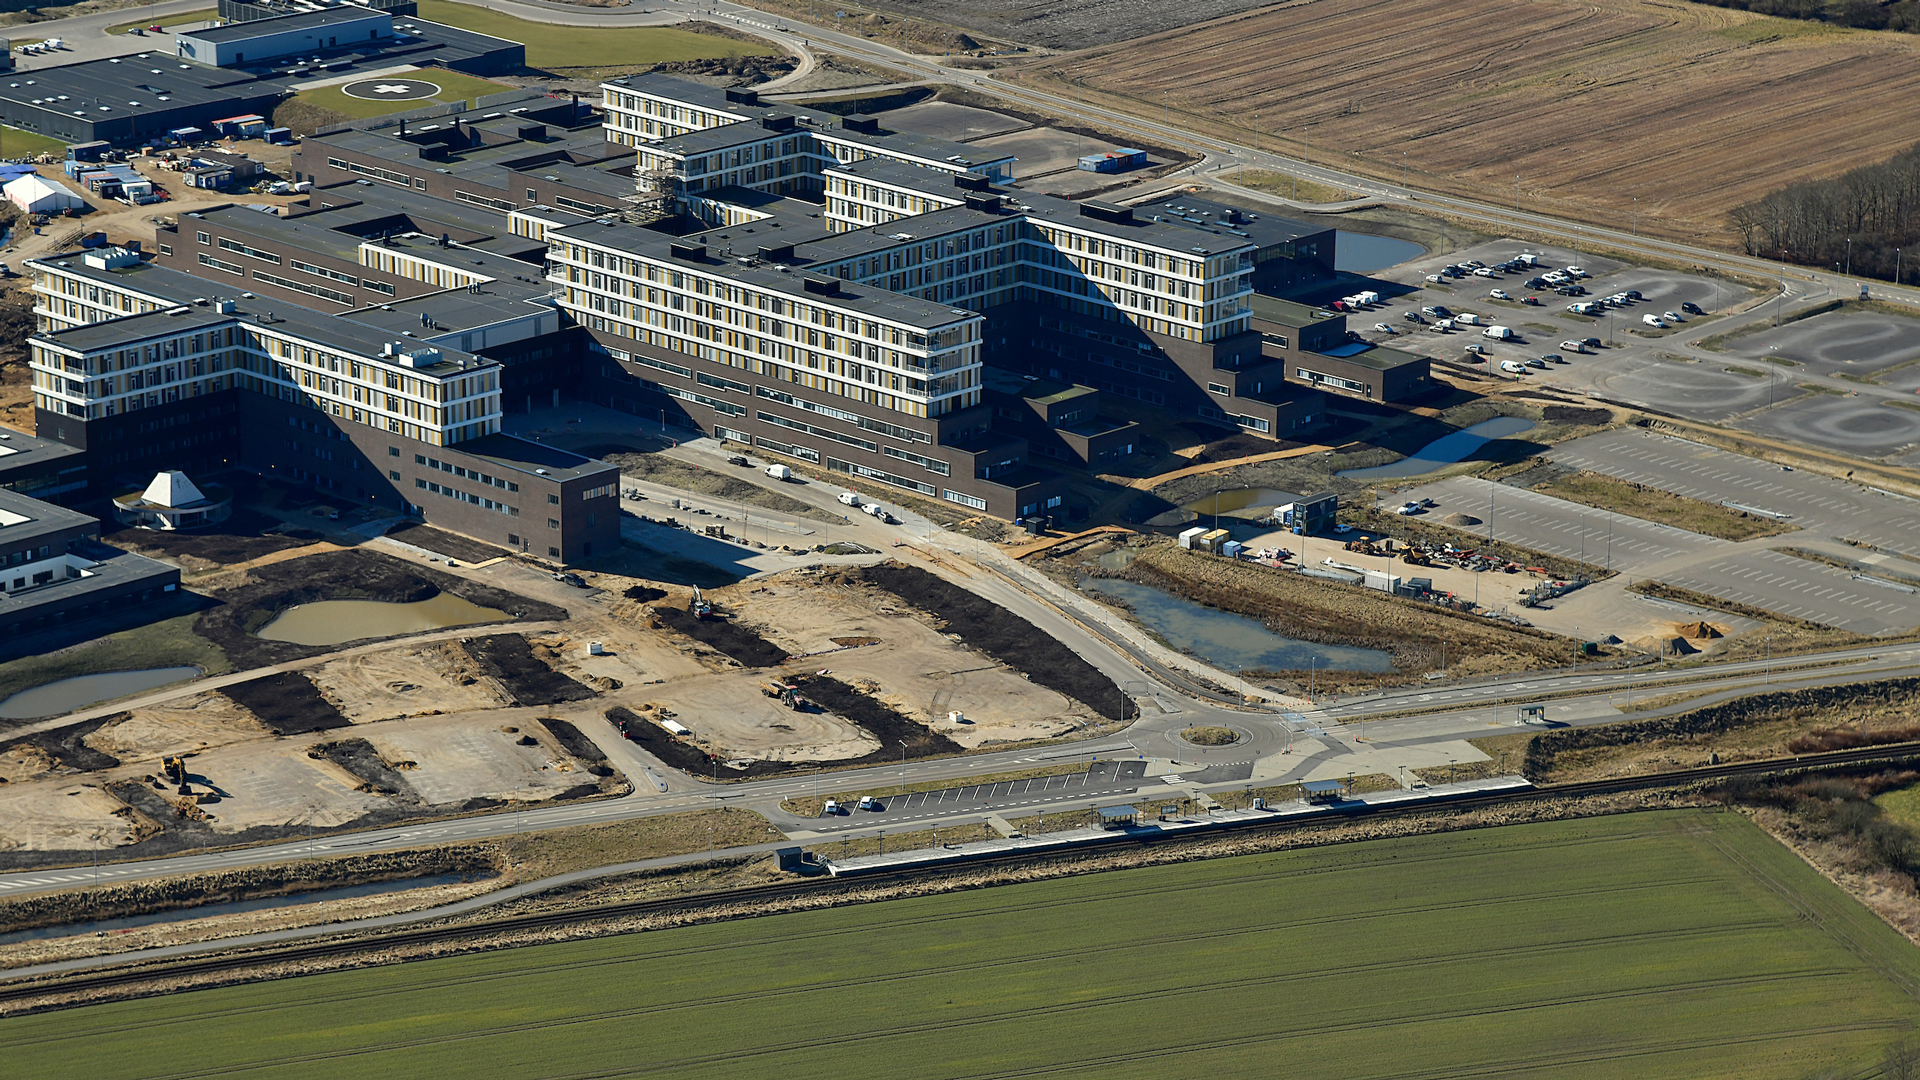 Gødstrup Station skal blandt andet betjene de knap 4000 medarbejdere samt patienter på regionshospitalet i Gødstrup (DNV-Gødstrup), som ses i baggrunden.